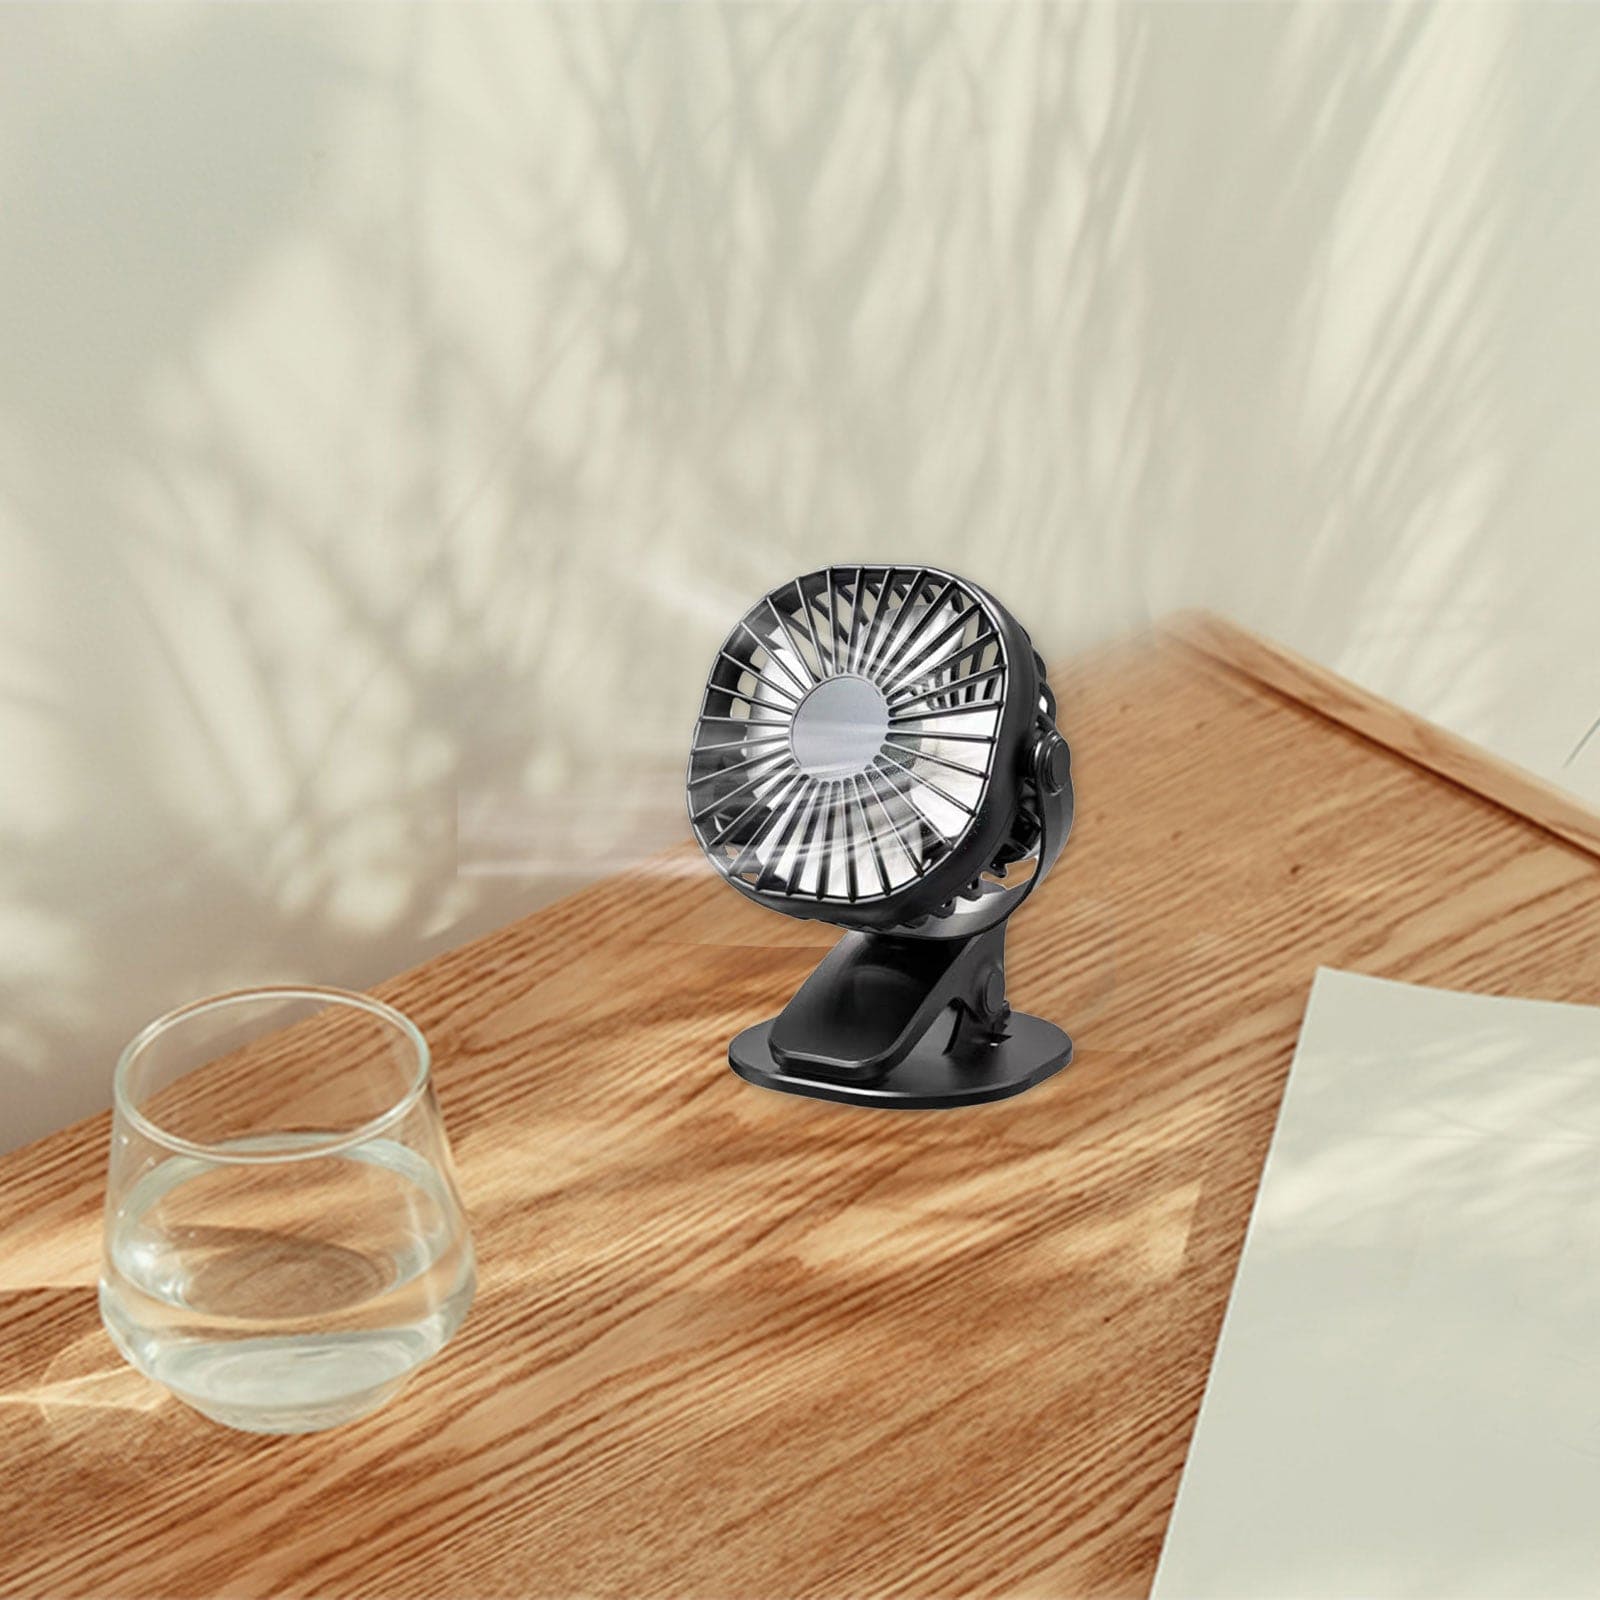 Mini Desk Flip Fan, 360° USB Fan Cooler Cooling Mini Fan, Ultra Quiet Desk Fan, Portable Air Circulating USB Fan, Portable Handheld Cooling Fan,  Rechargeable Battery Operated Table Fan With Clip